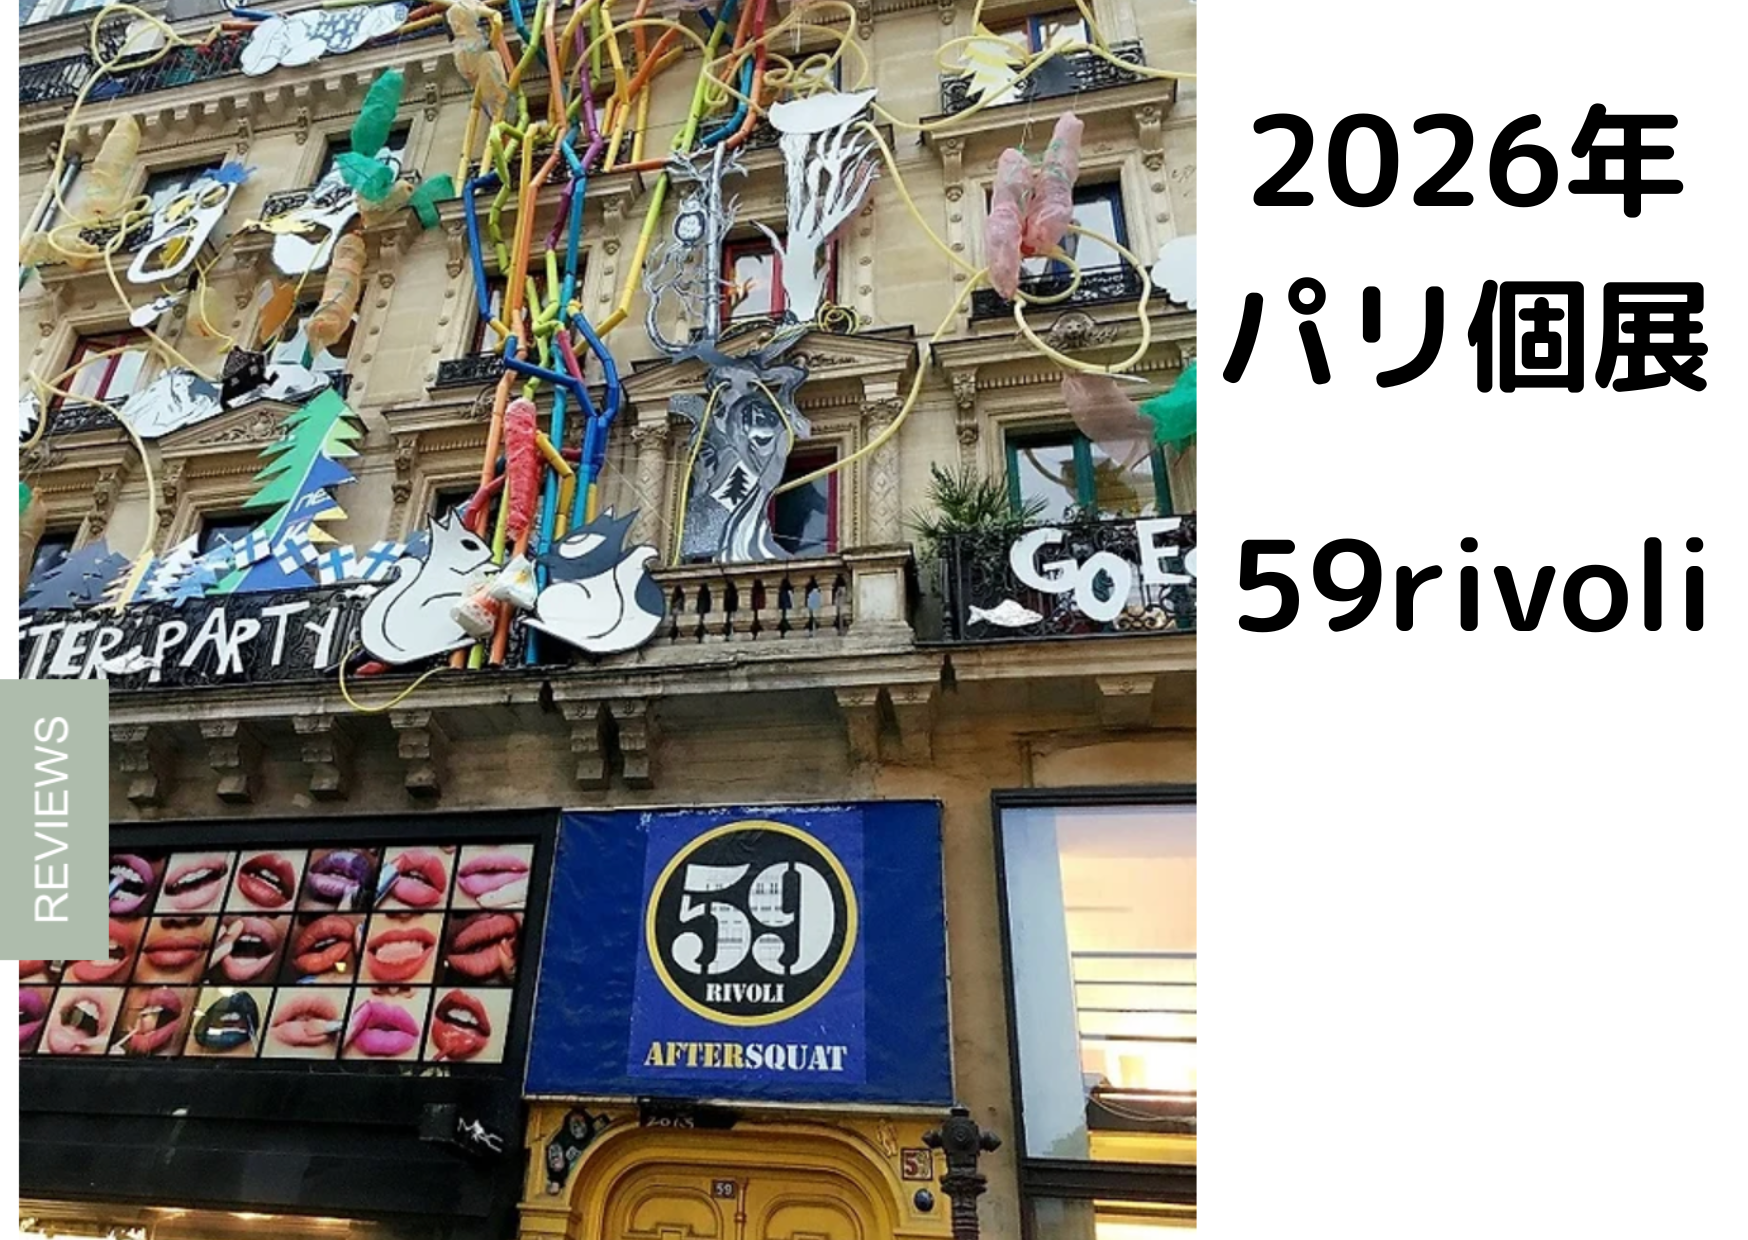 パリ個展2026(3か月) 夢ではなく目標